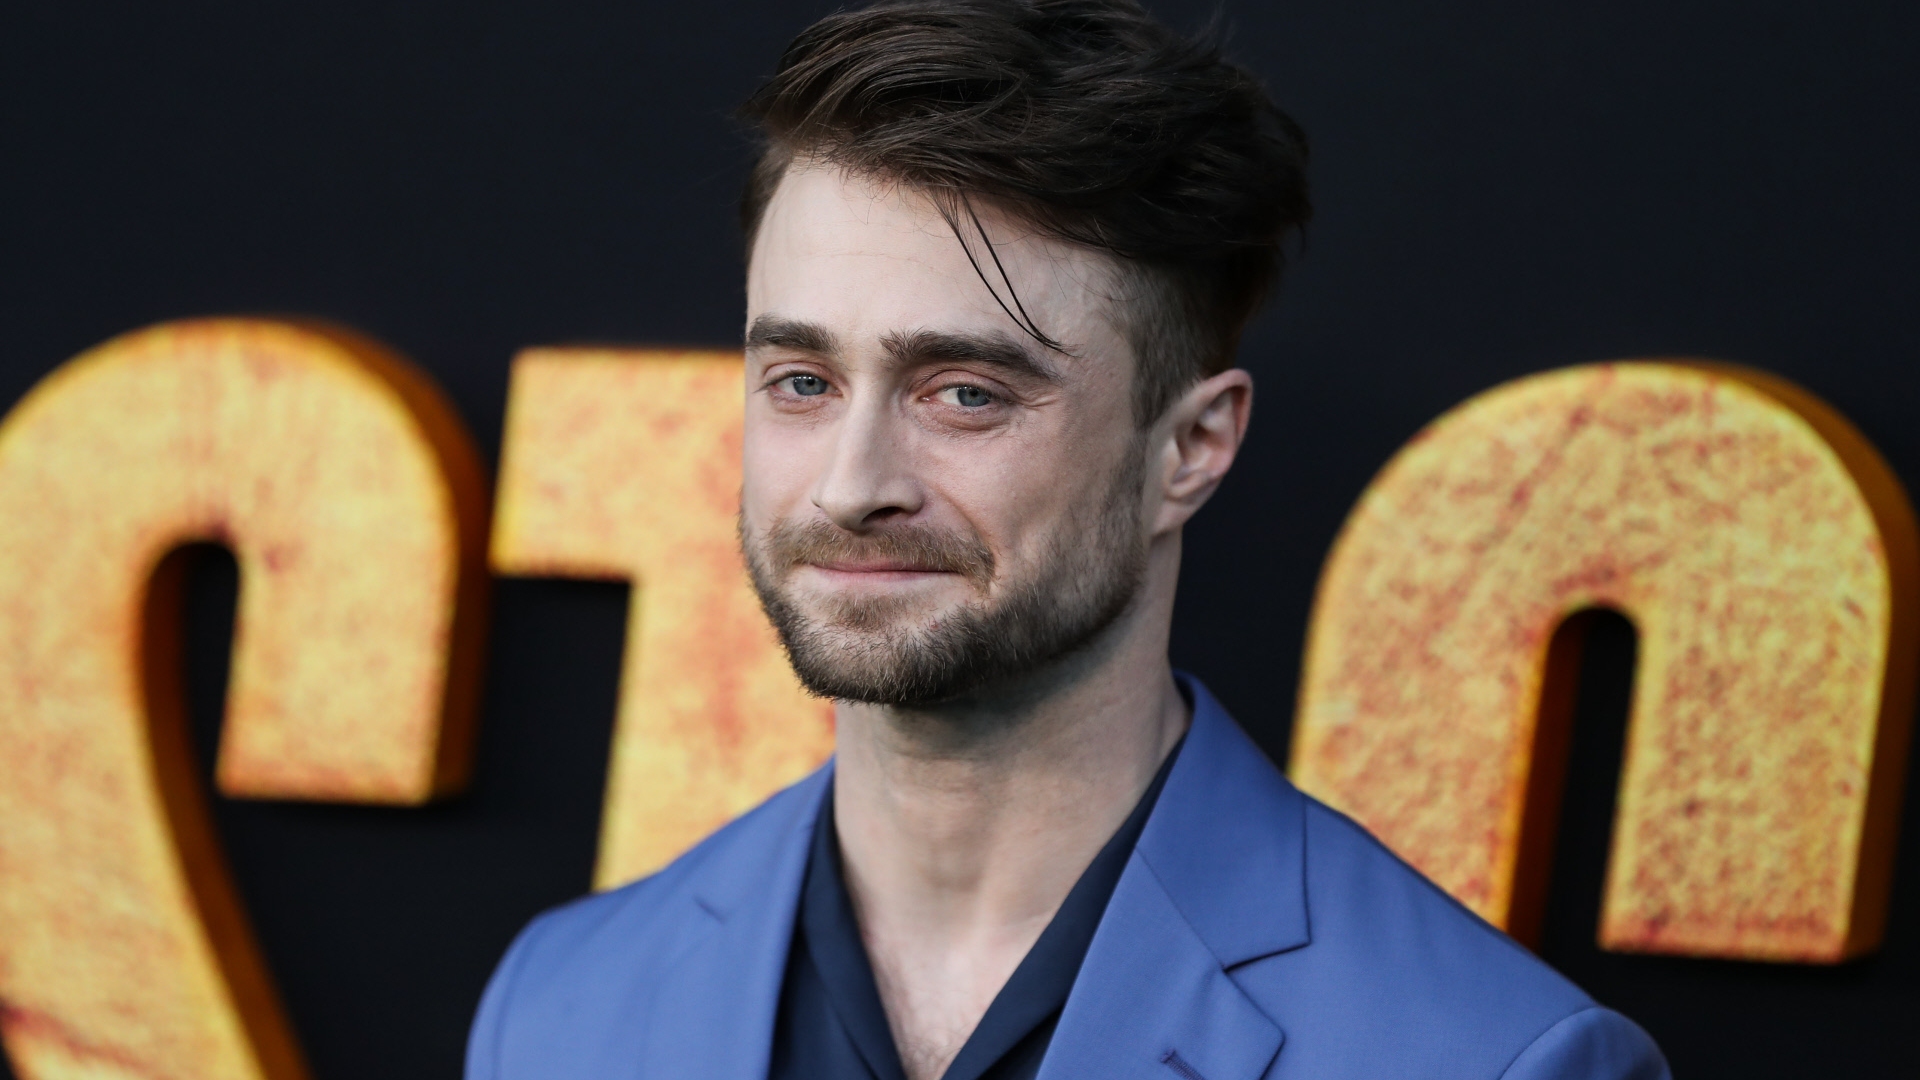 Más allá de Harry Potter: las películas más insólitas de Daniel Radcliffe